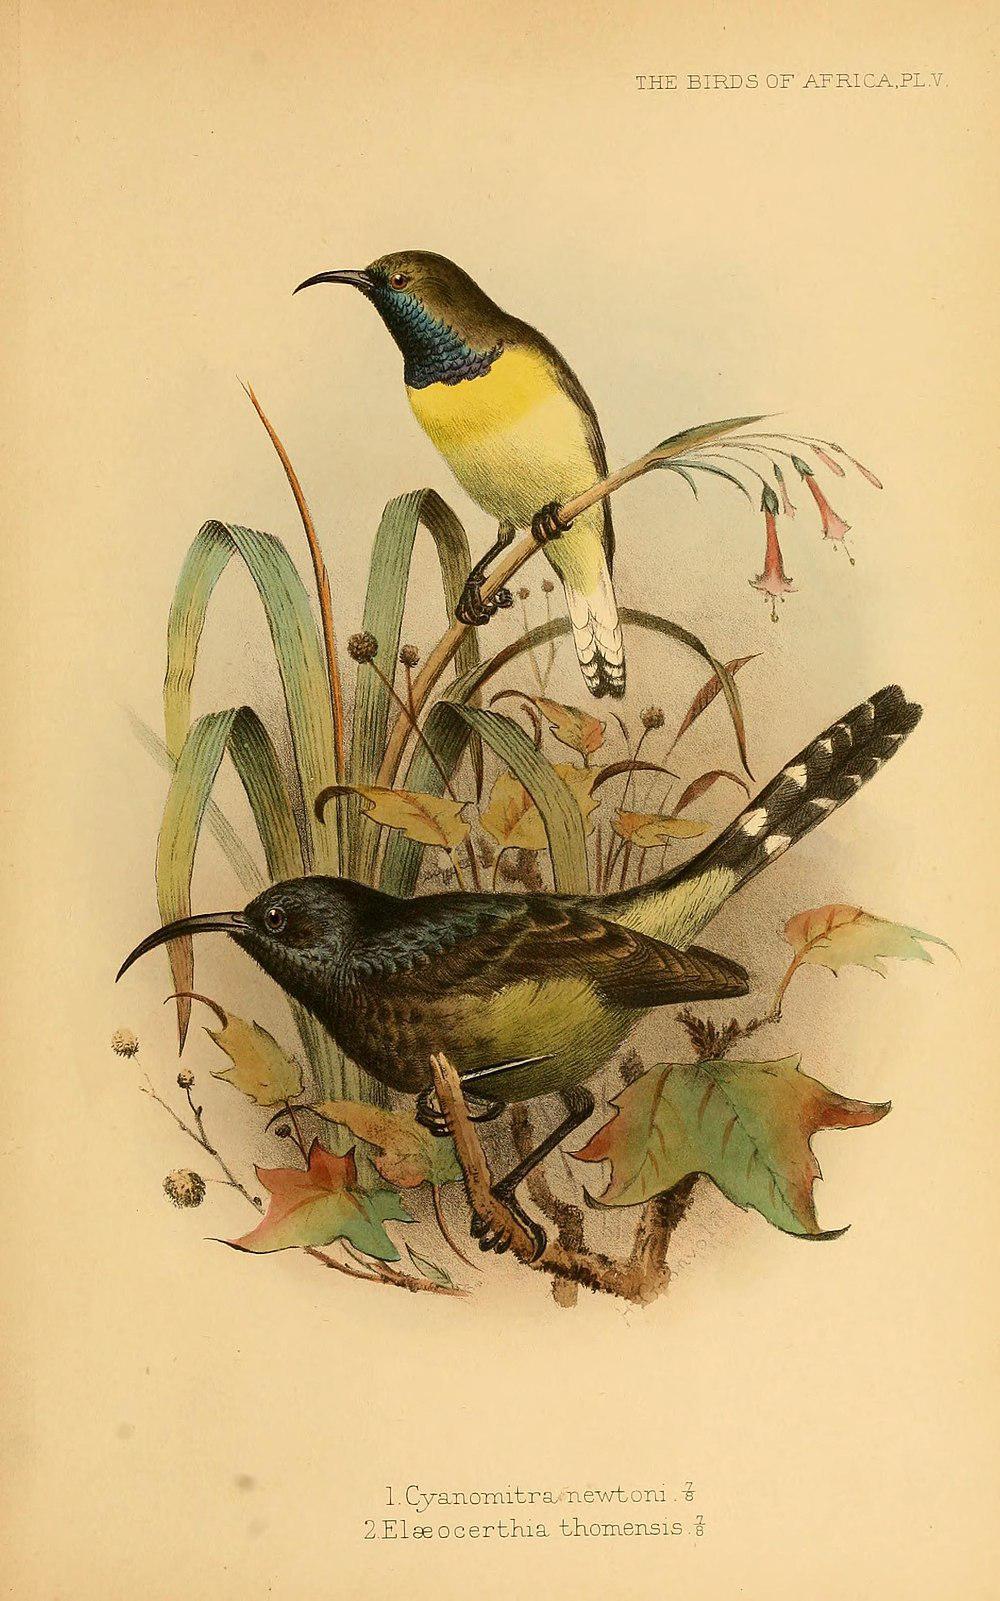 巨花蜜鸟 / Giant Sunbird / Dreptes thomensis